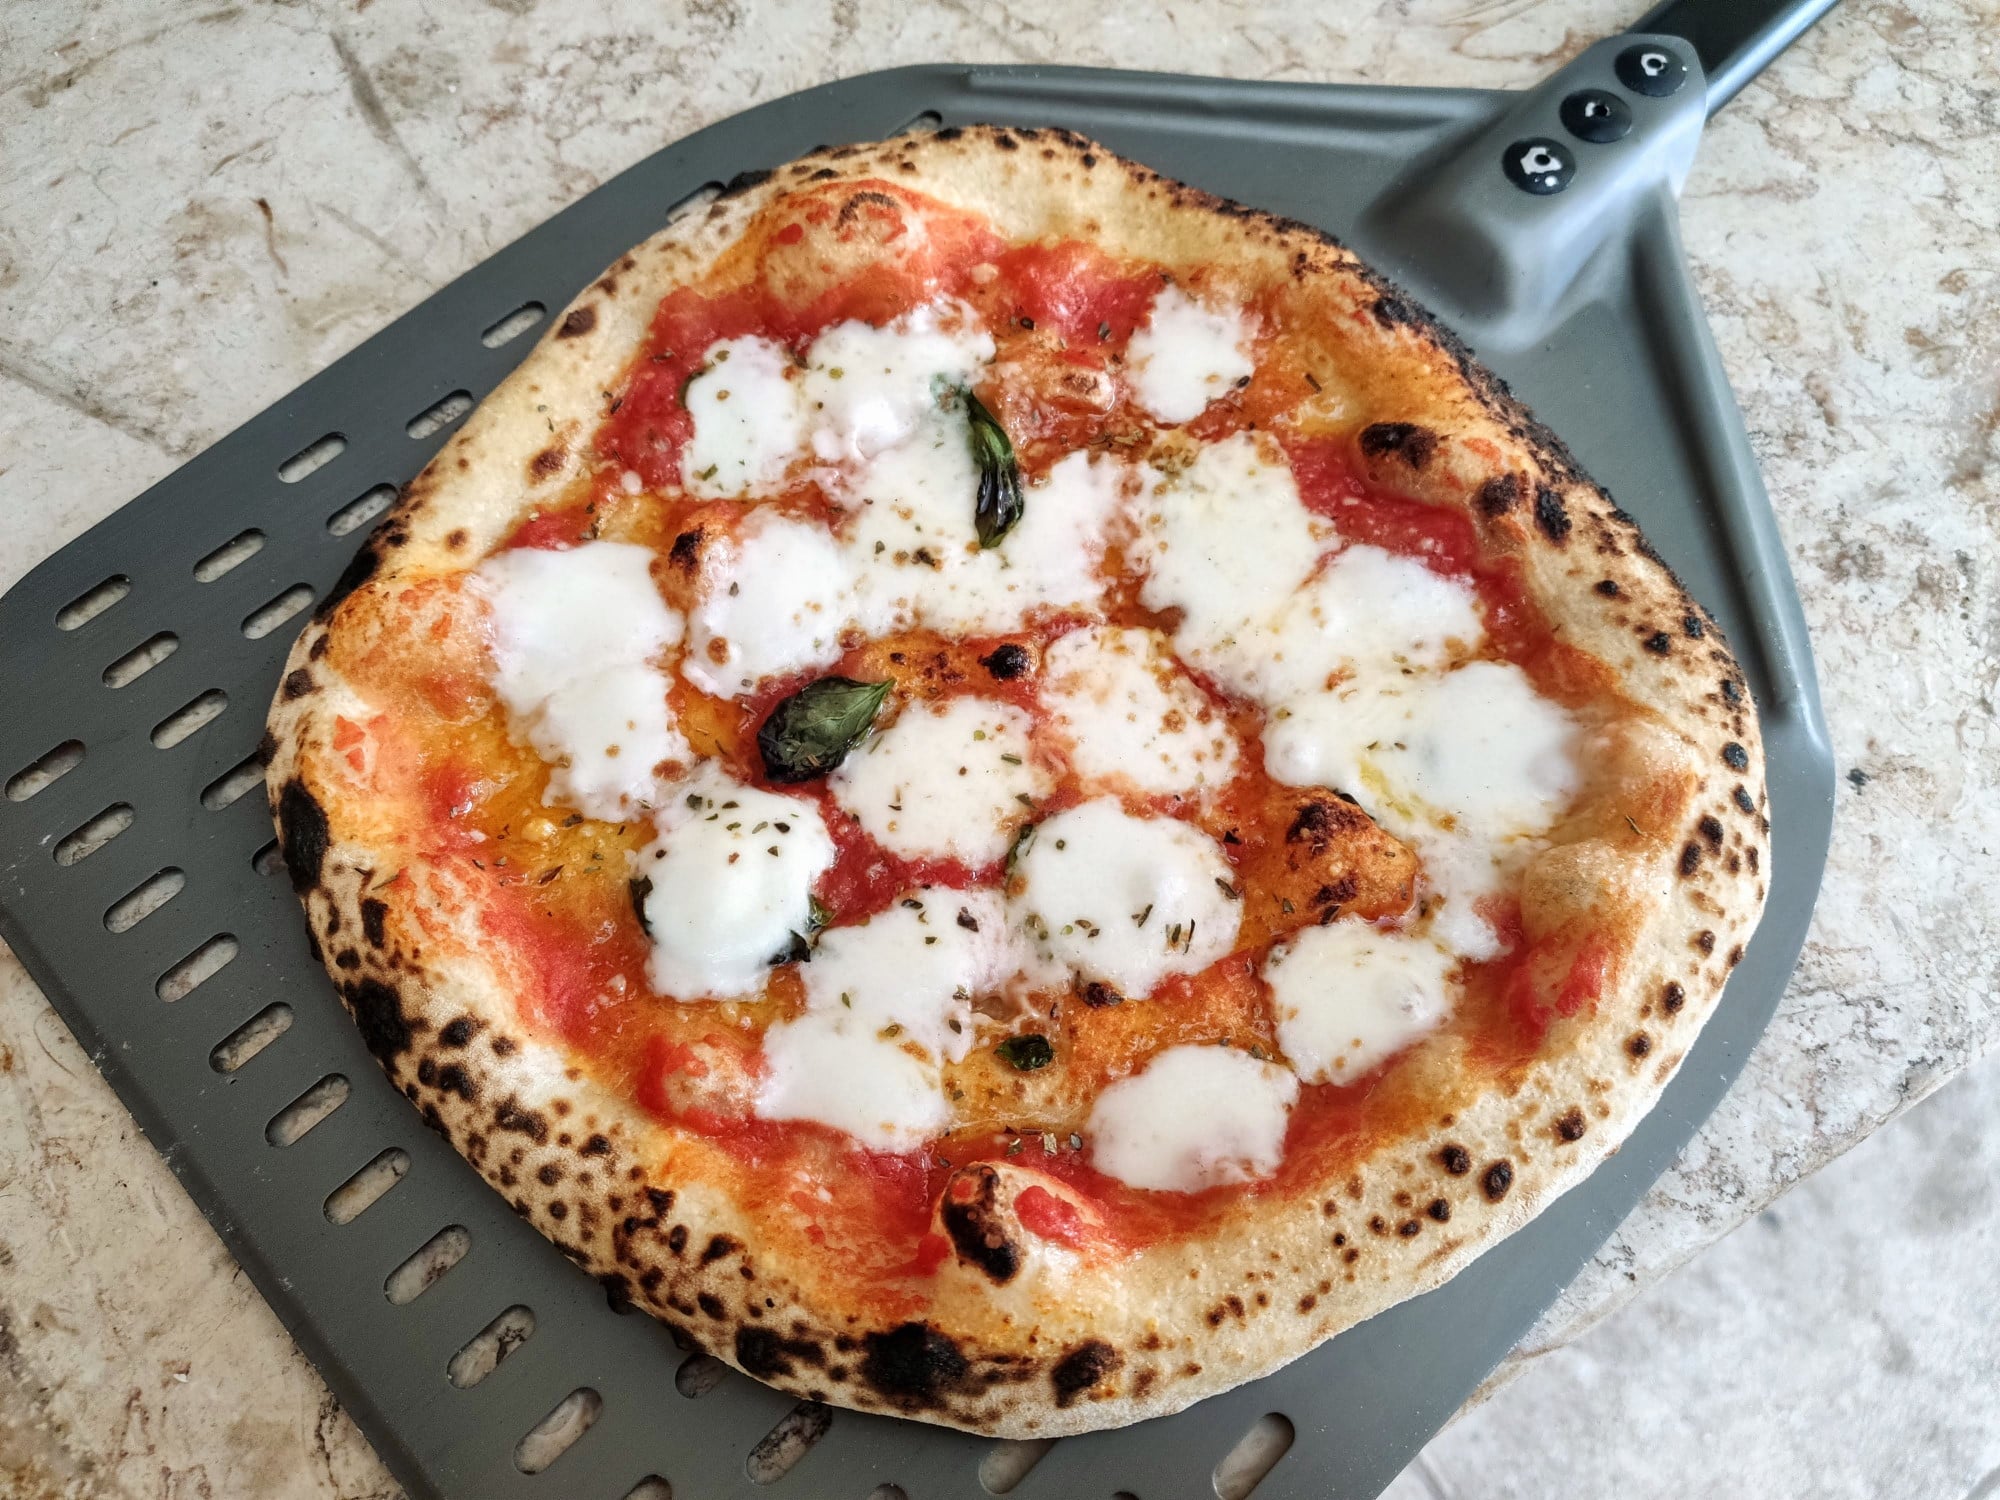 best outdoor pizza oven